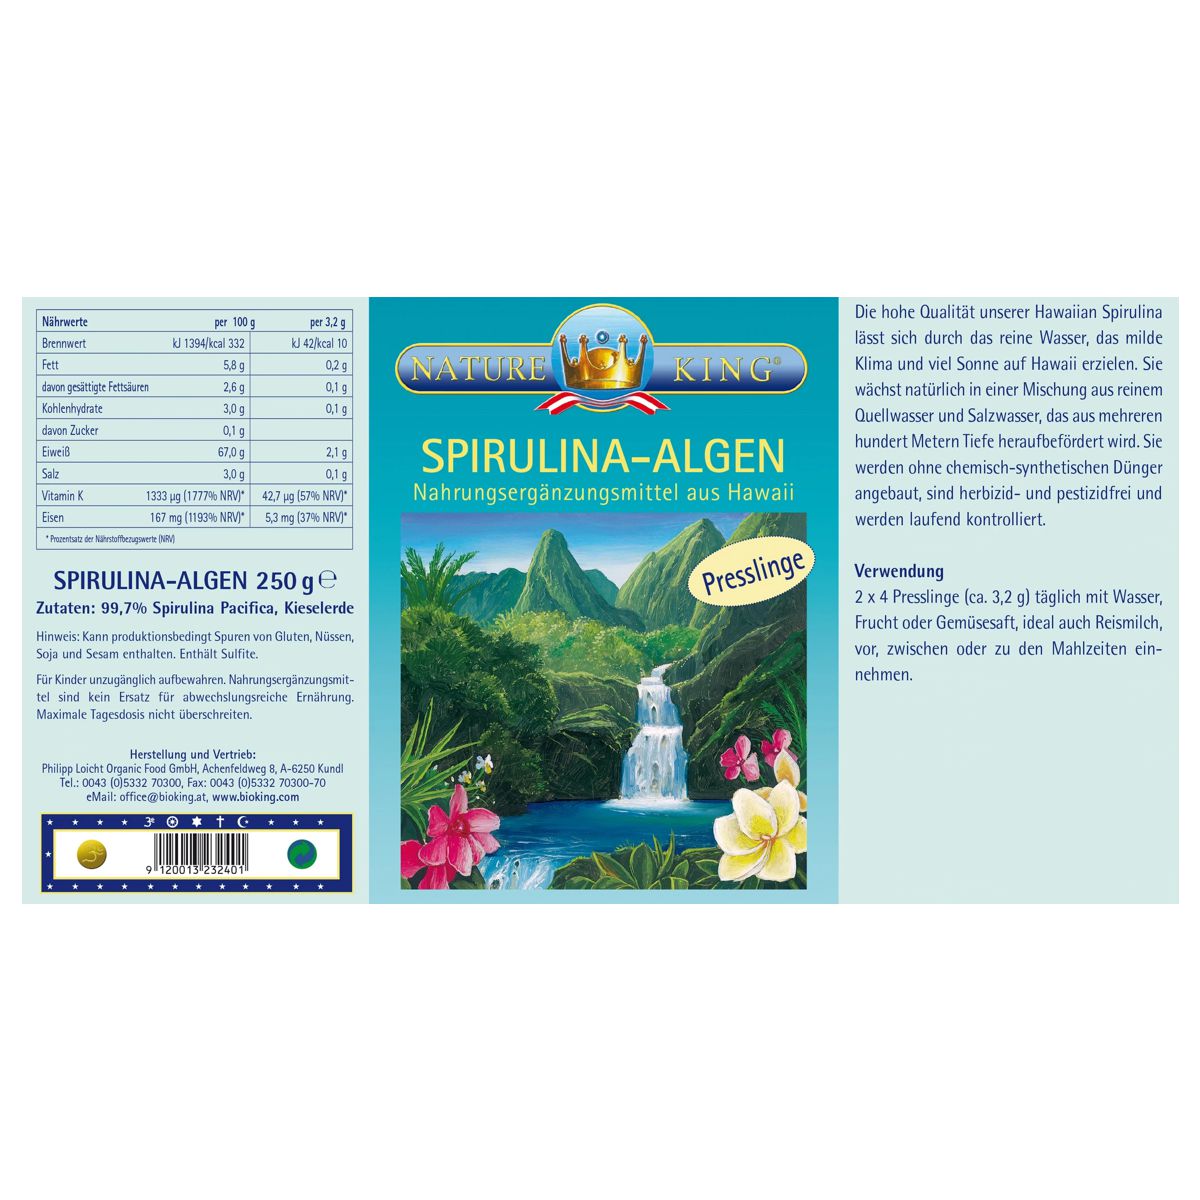 Bioking_Spirulina_Algen_Presslinge_250g_online_kaufen